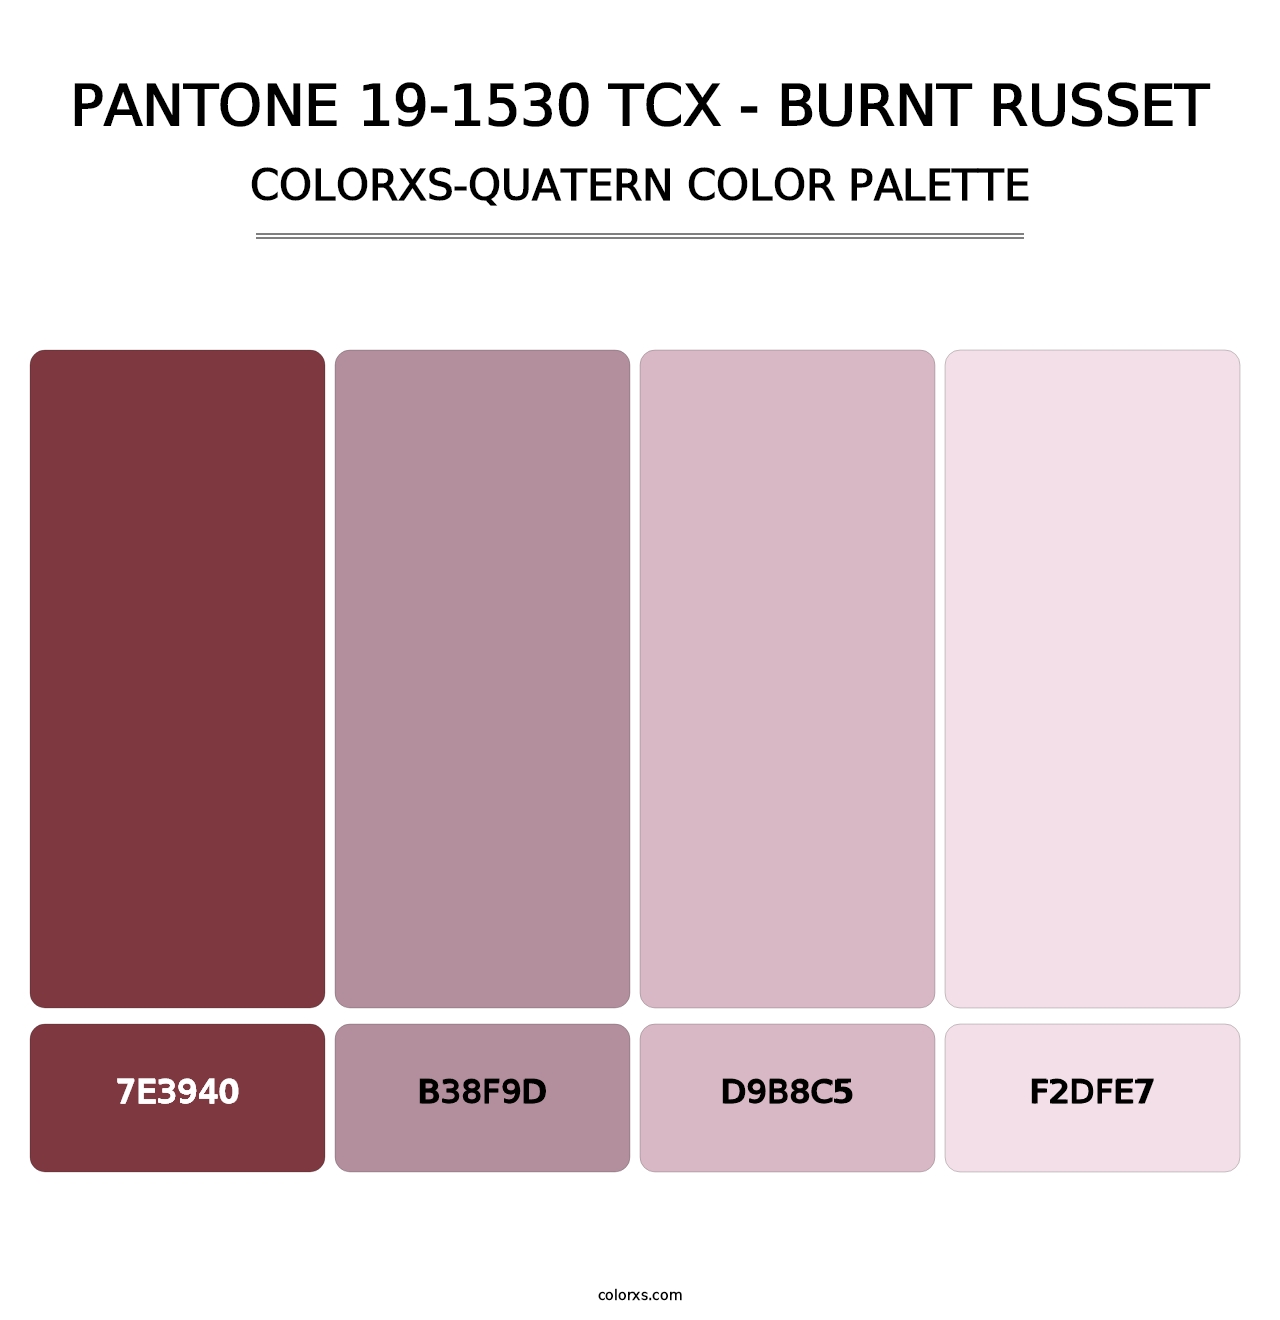 PANTONE 19-1530 TCX - Burnt Russet - Colorxs Quatern Palette